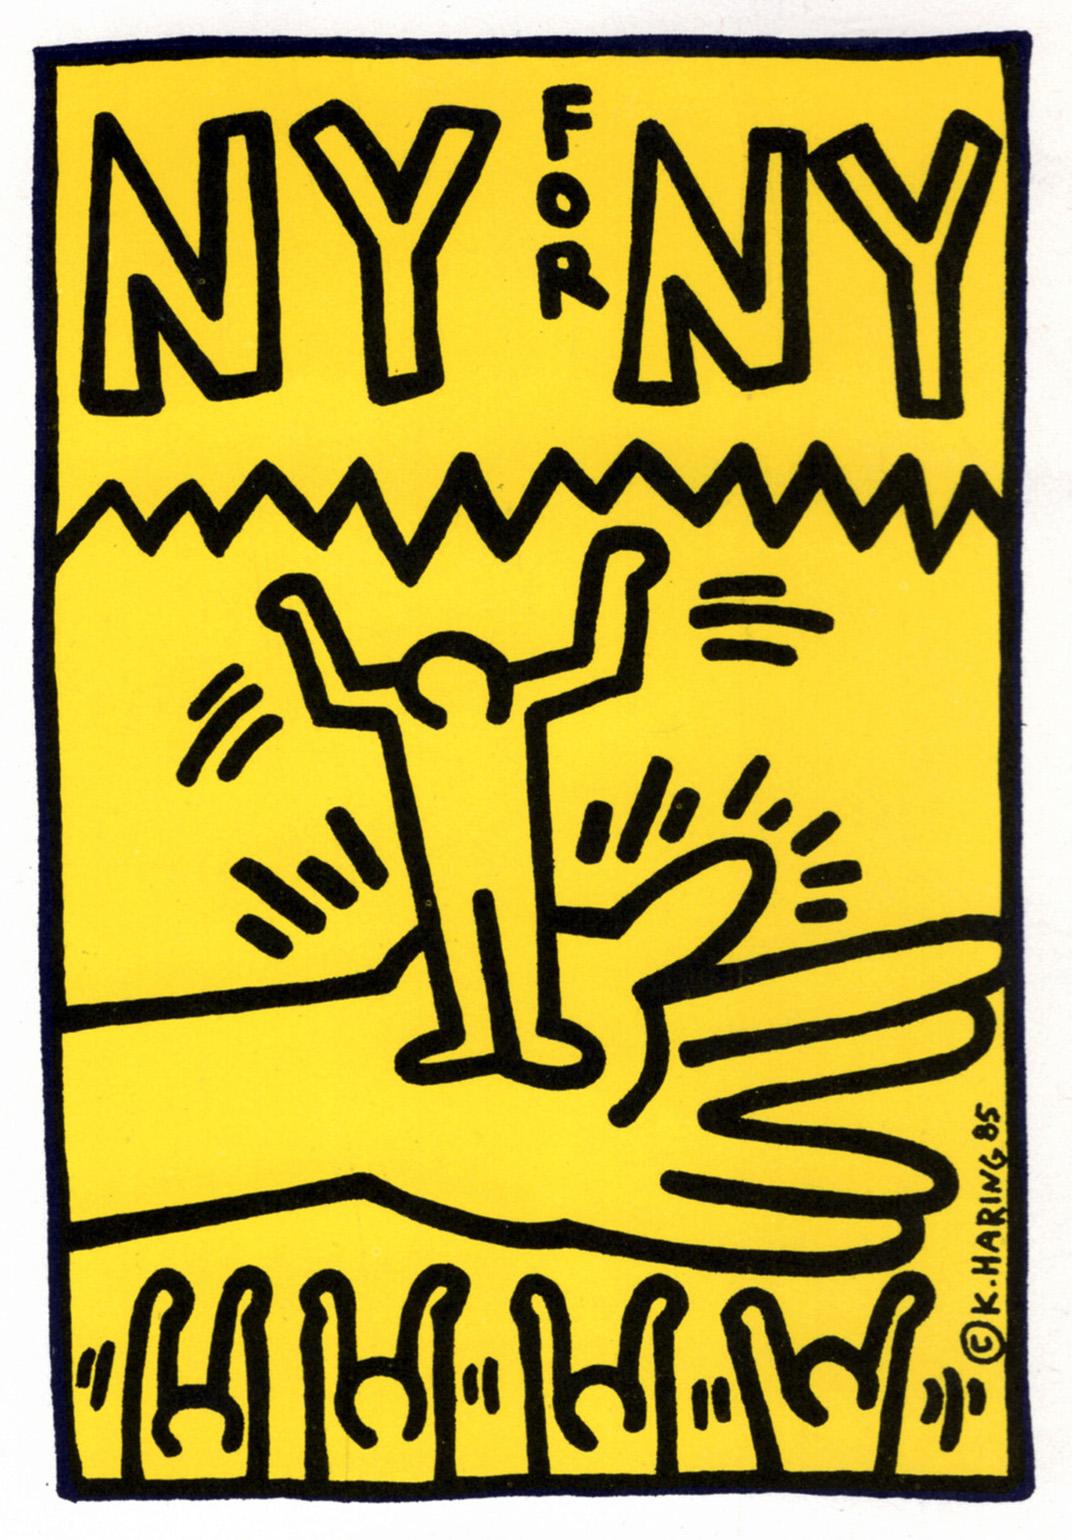 Keith Haring 1985 :
Carton d'annonce illustré de Keith Haring, NY, 1985 : "NY for NY, Help The Homeless" au Roxy, West 18th St., NYC.

Imprimé en offset, 1985 (se plie en trois).
Mesures : 5 x 7 pouces (15 x 7 pouces en position ouverte).
Signature